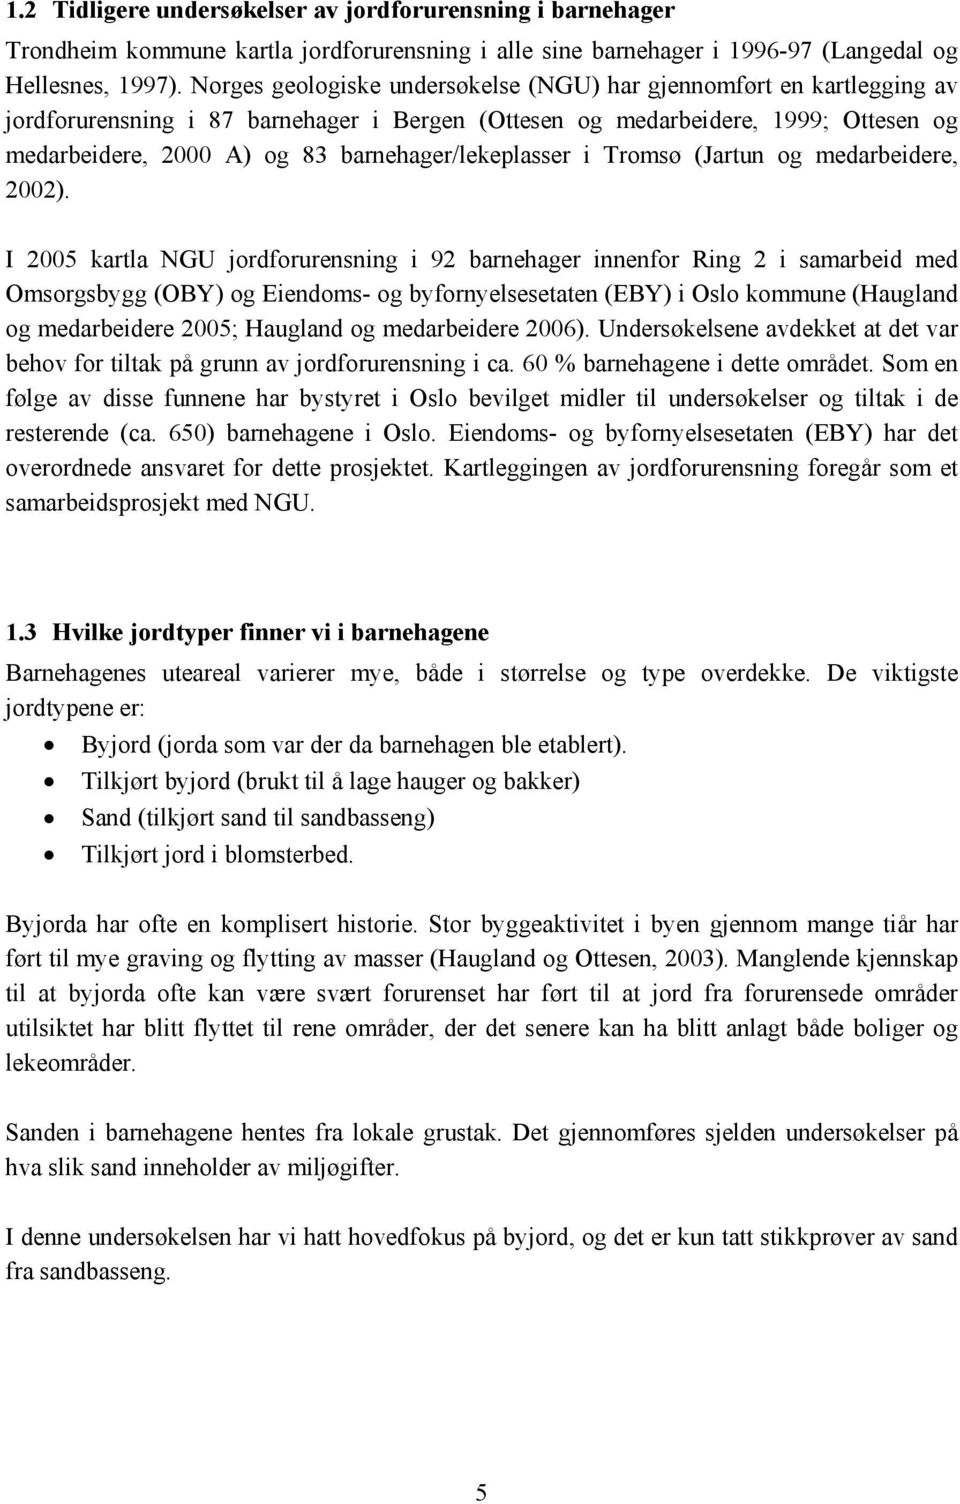 barnehager/lekeplasser i Tromsø (Jartun og medarbeidere, 2002).